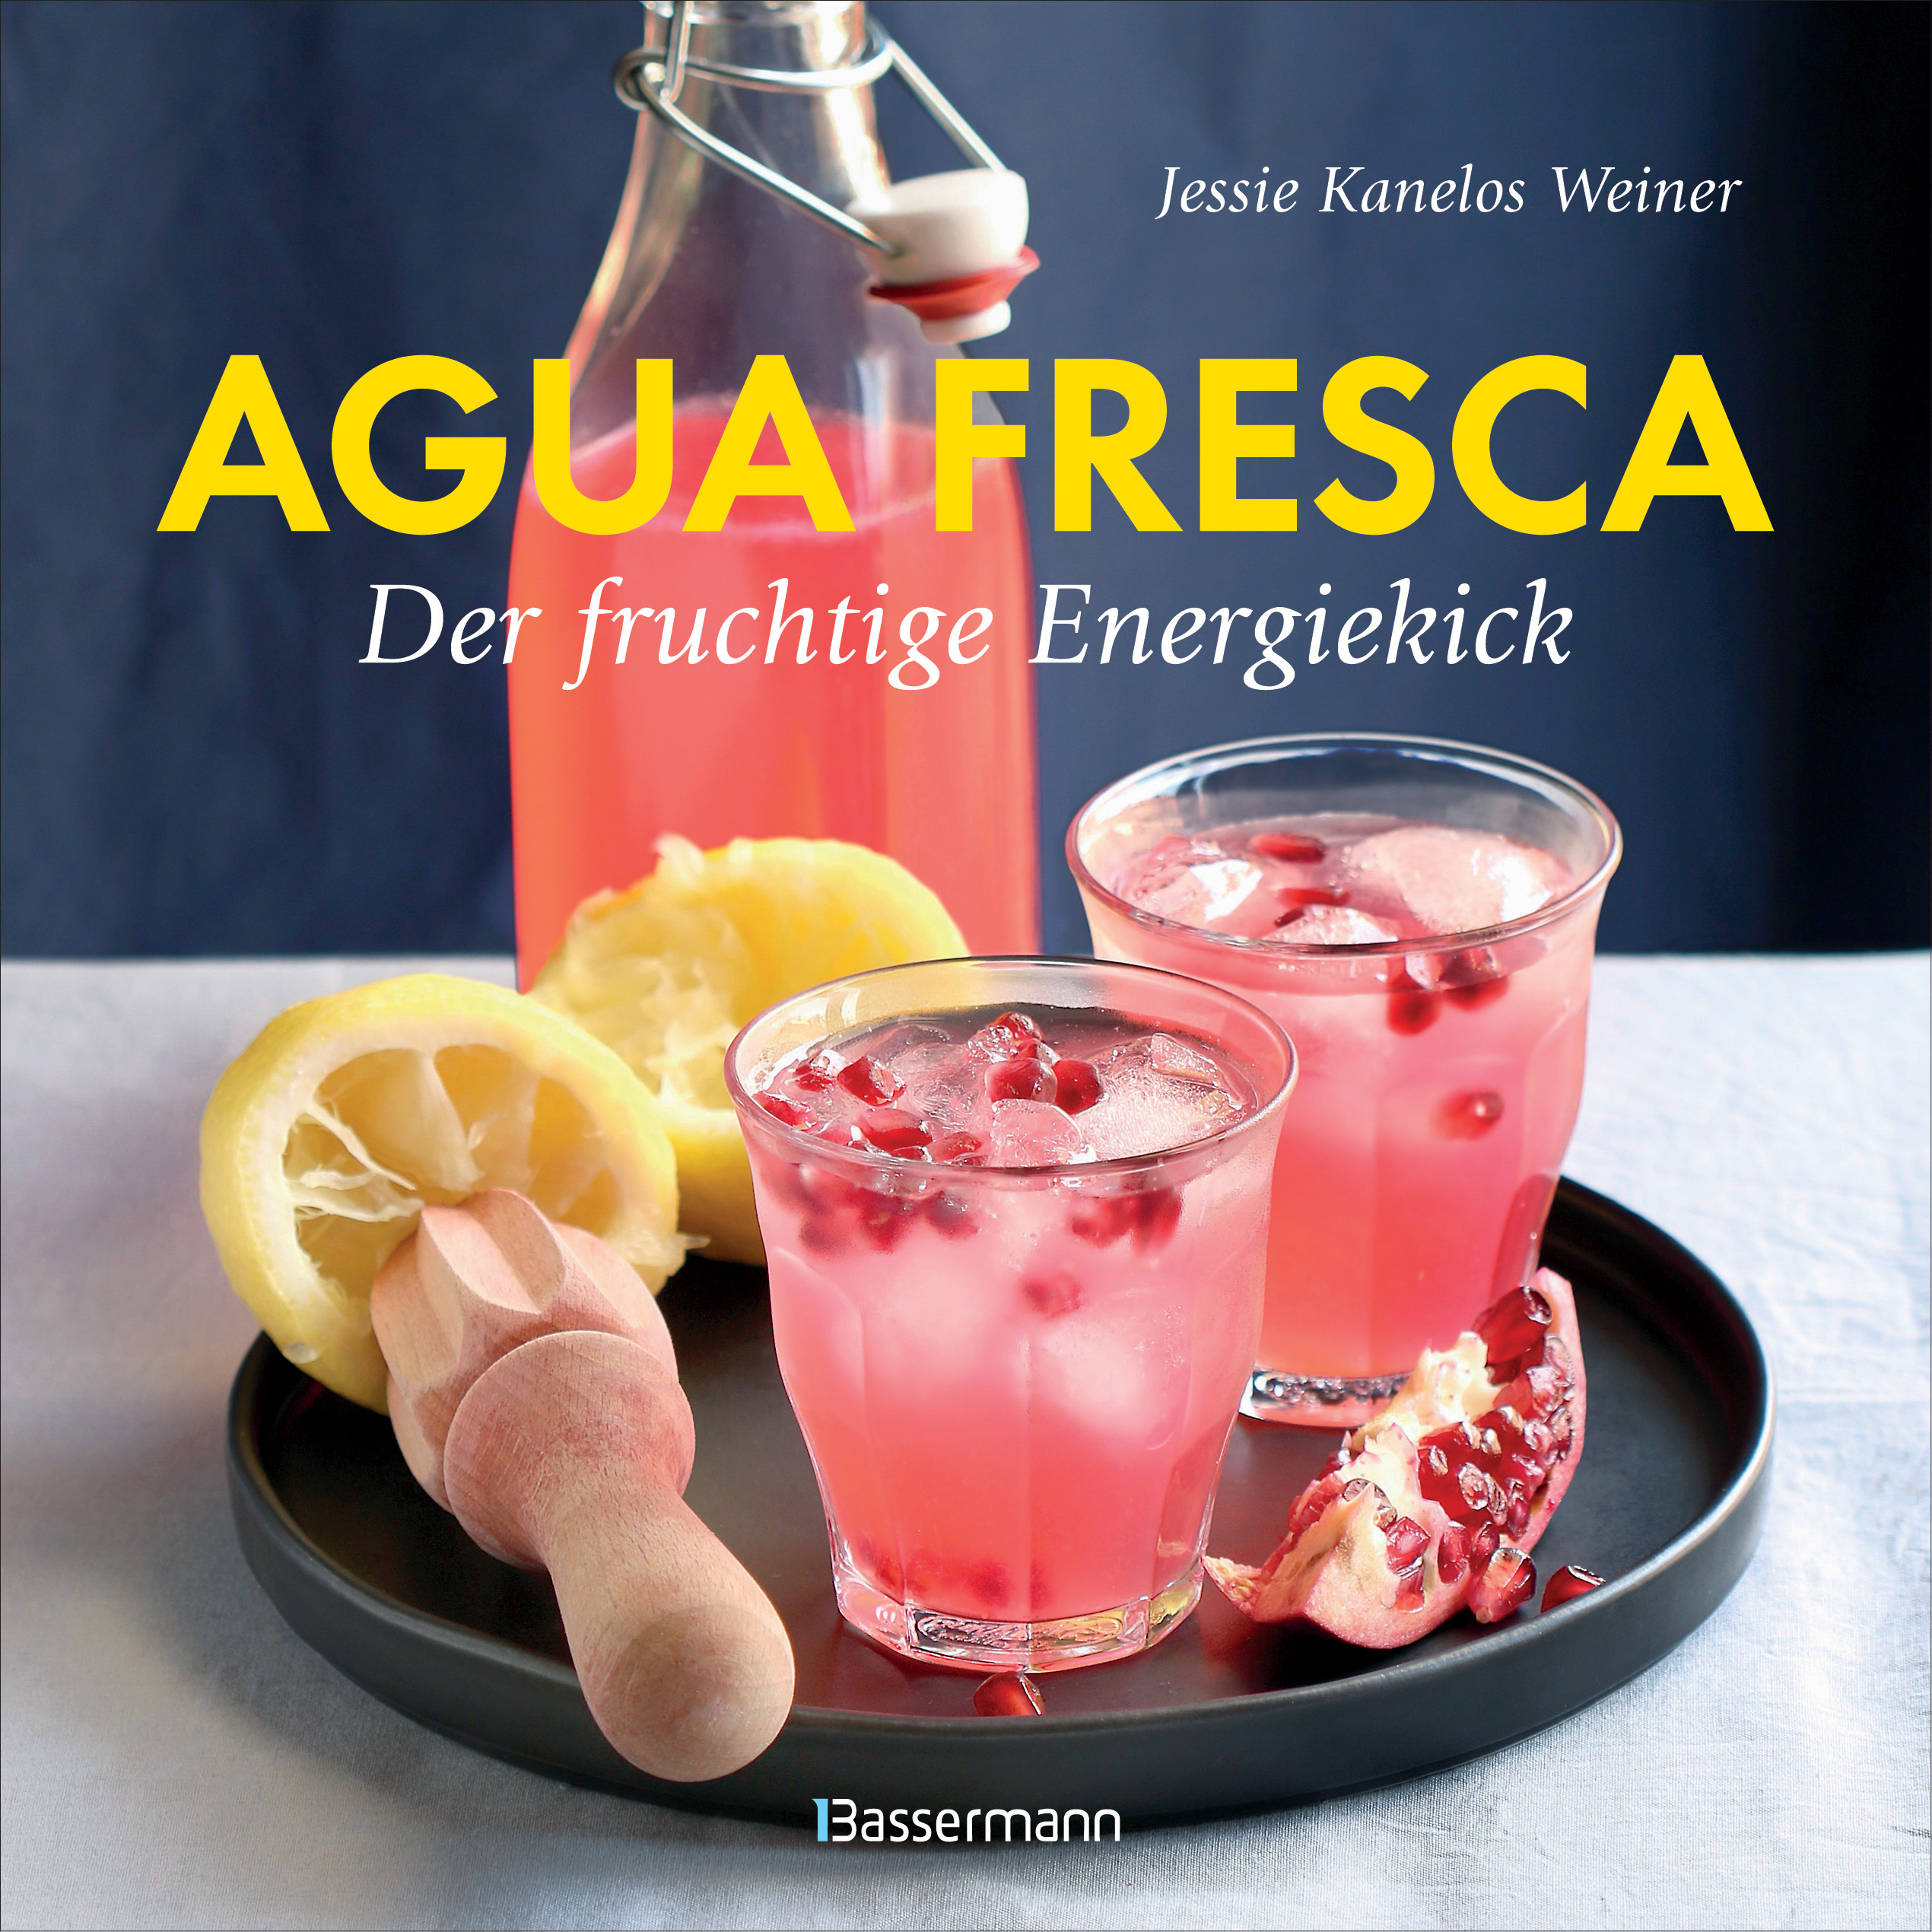 Agua fresca - der fruchtige Energiekick von Jessie Kanelos Weiner